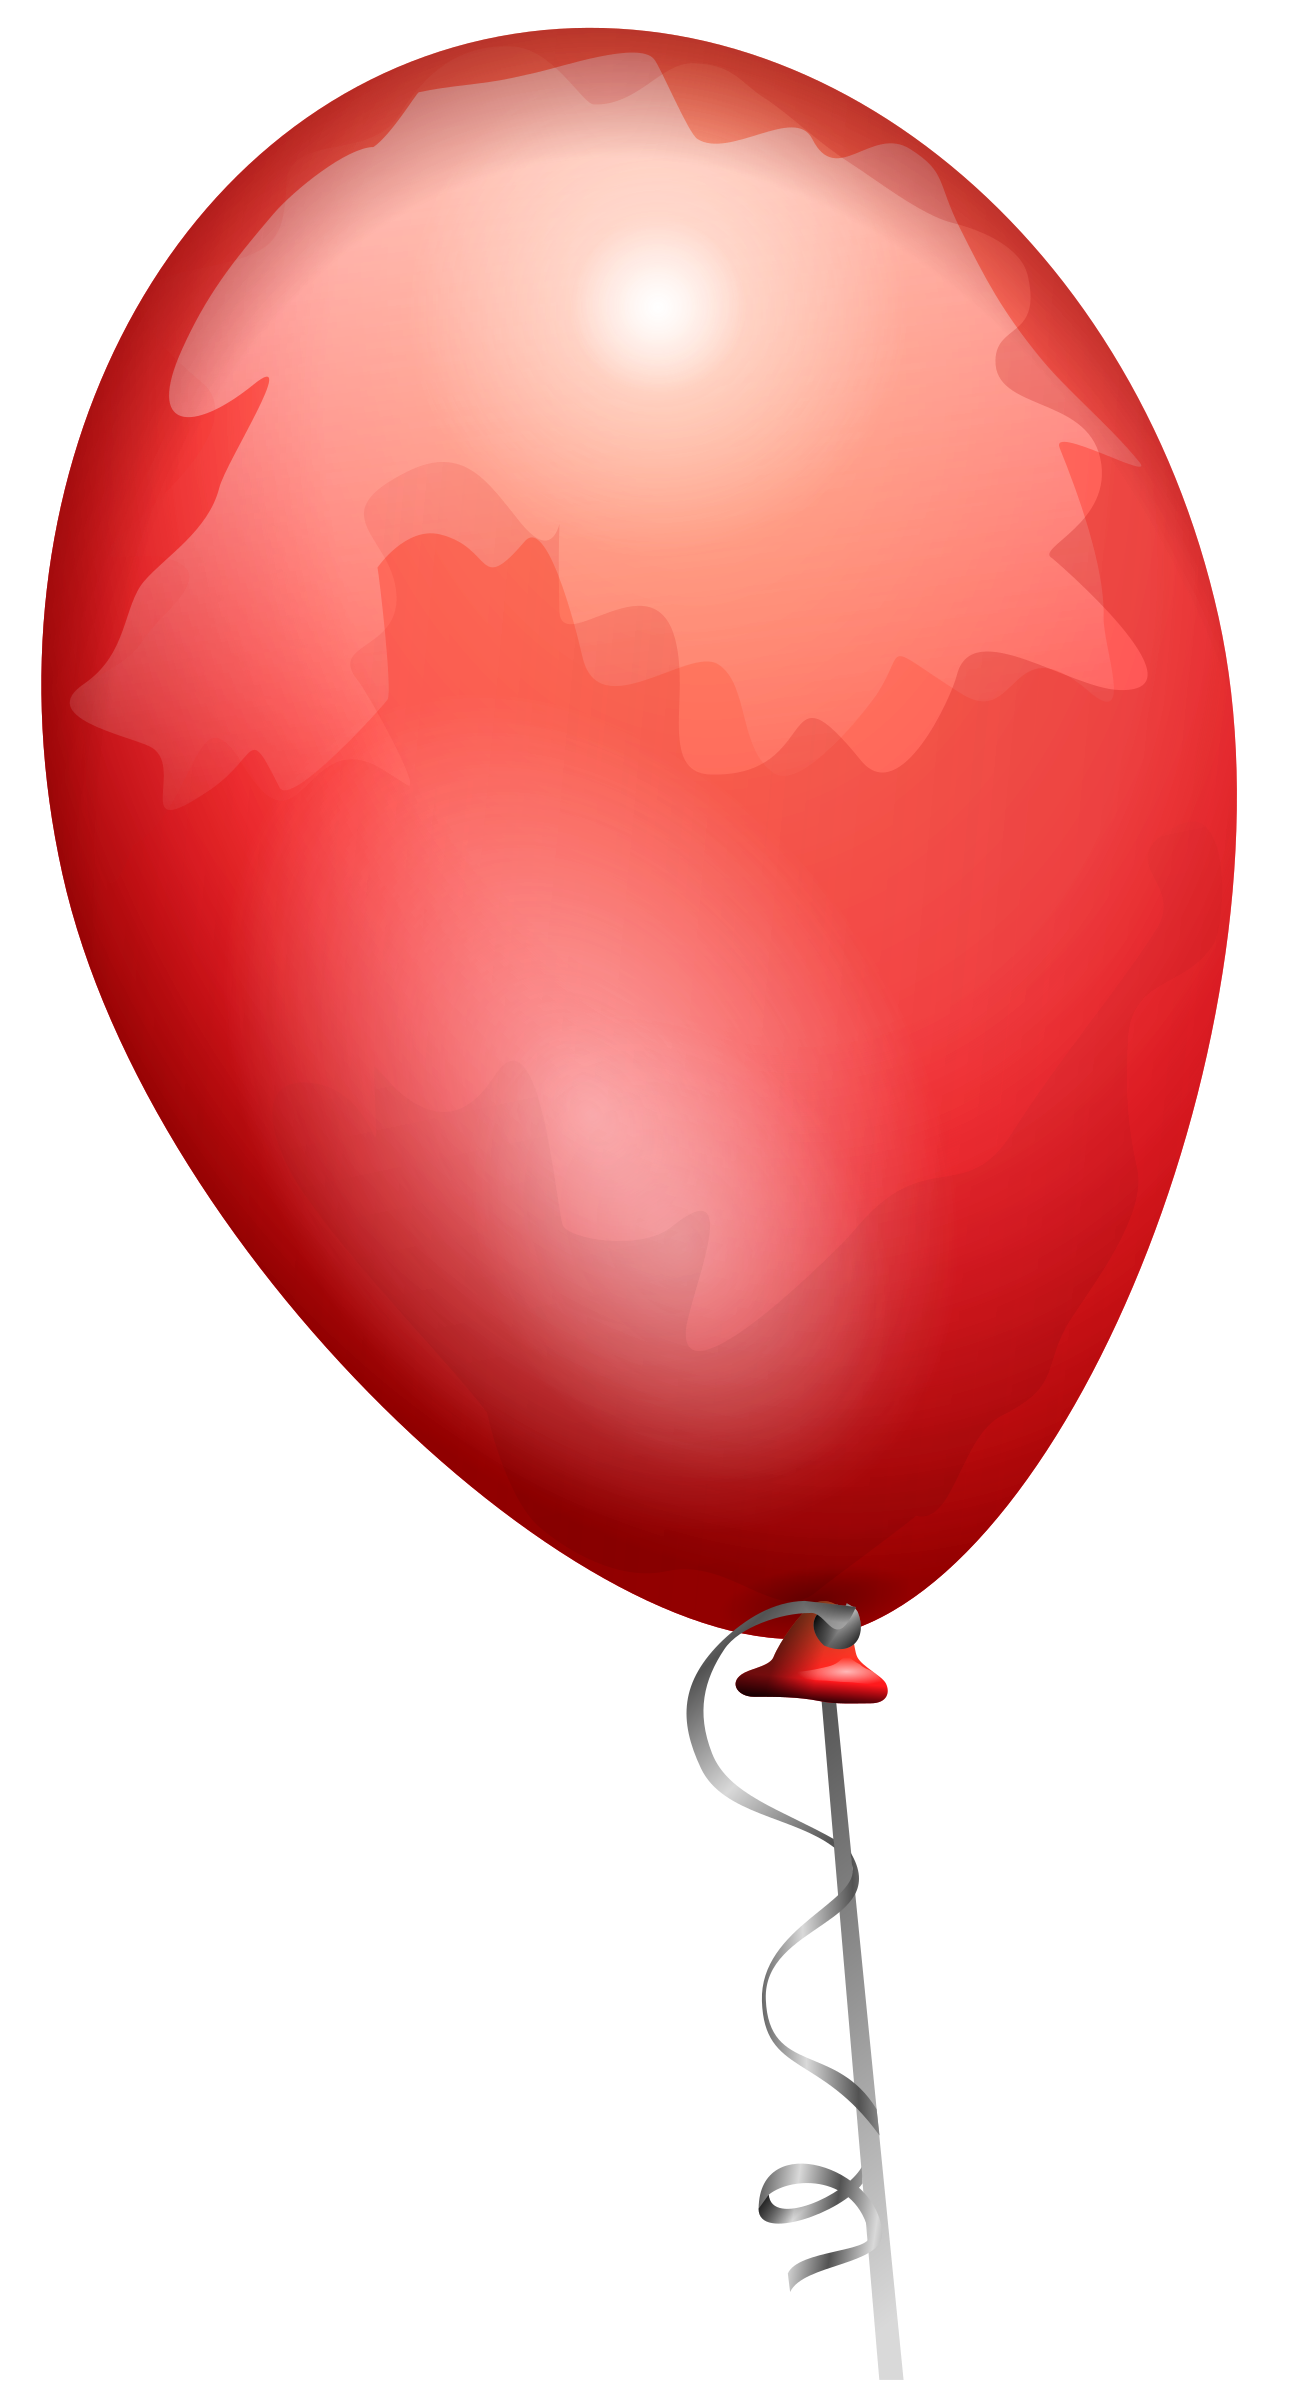 red clipart ballon